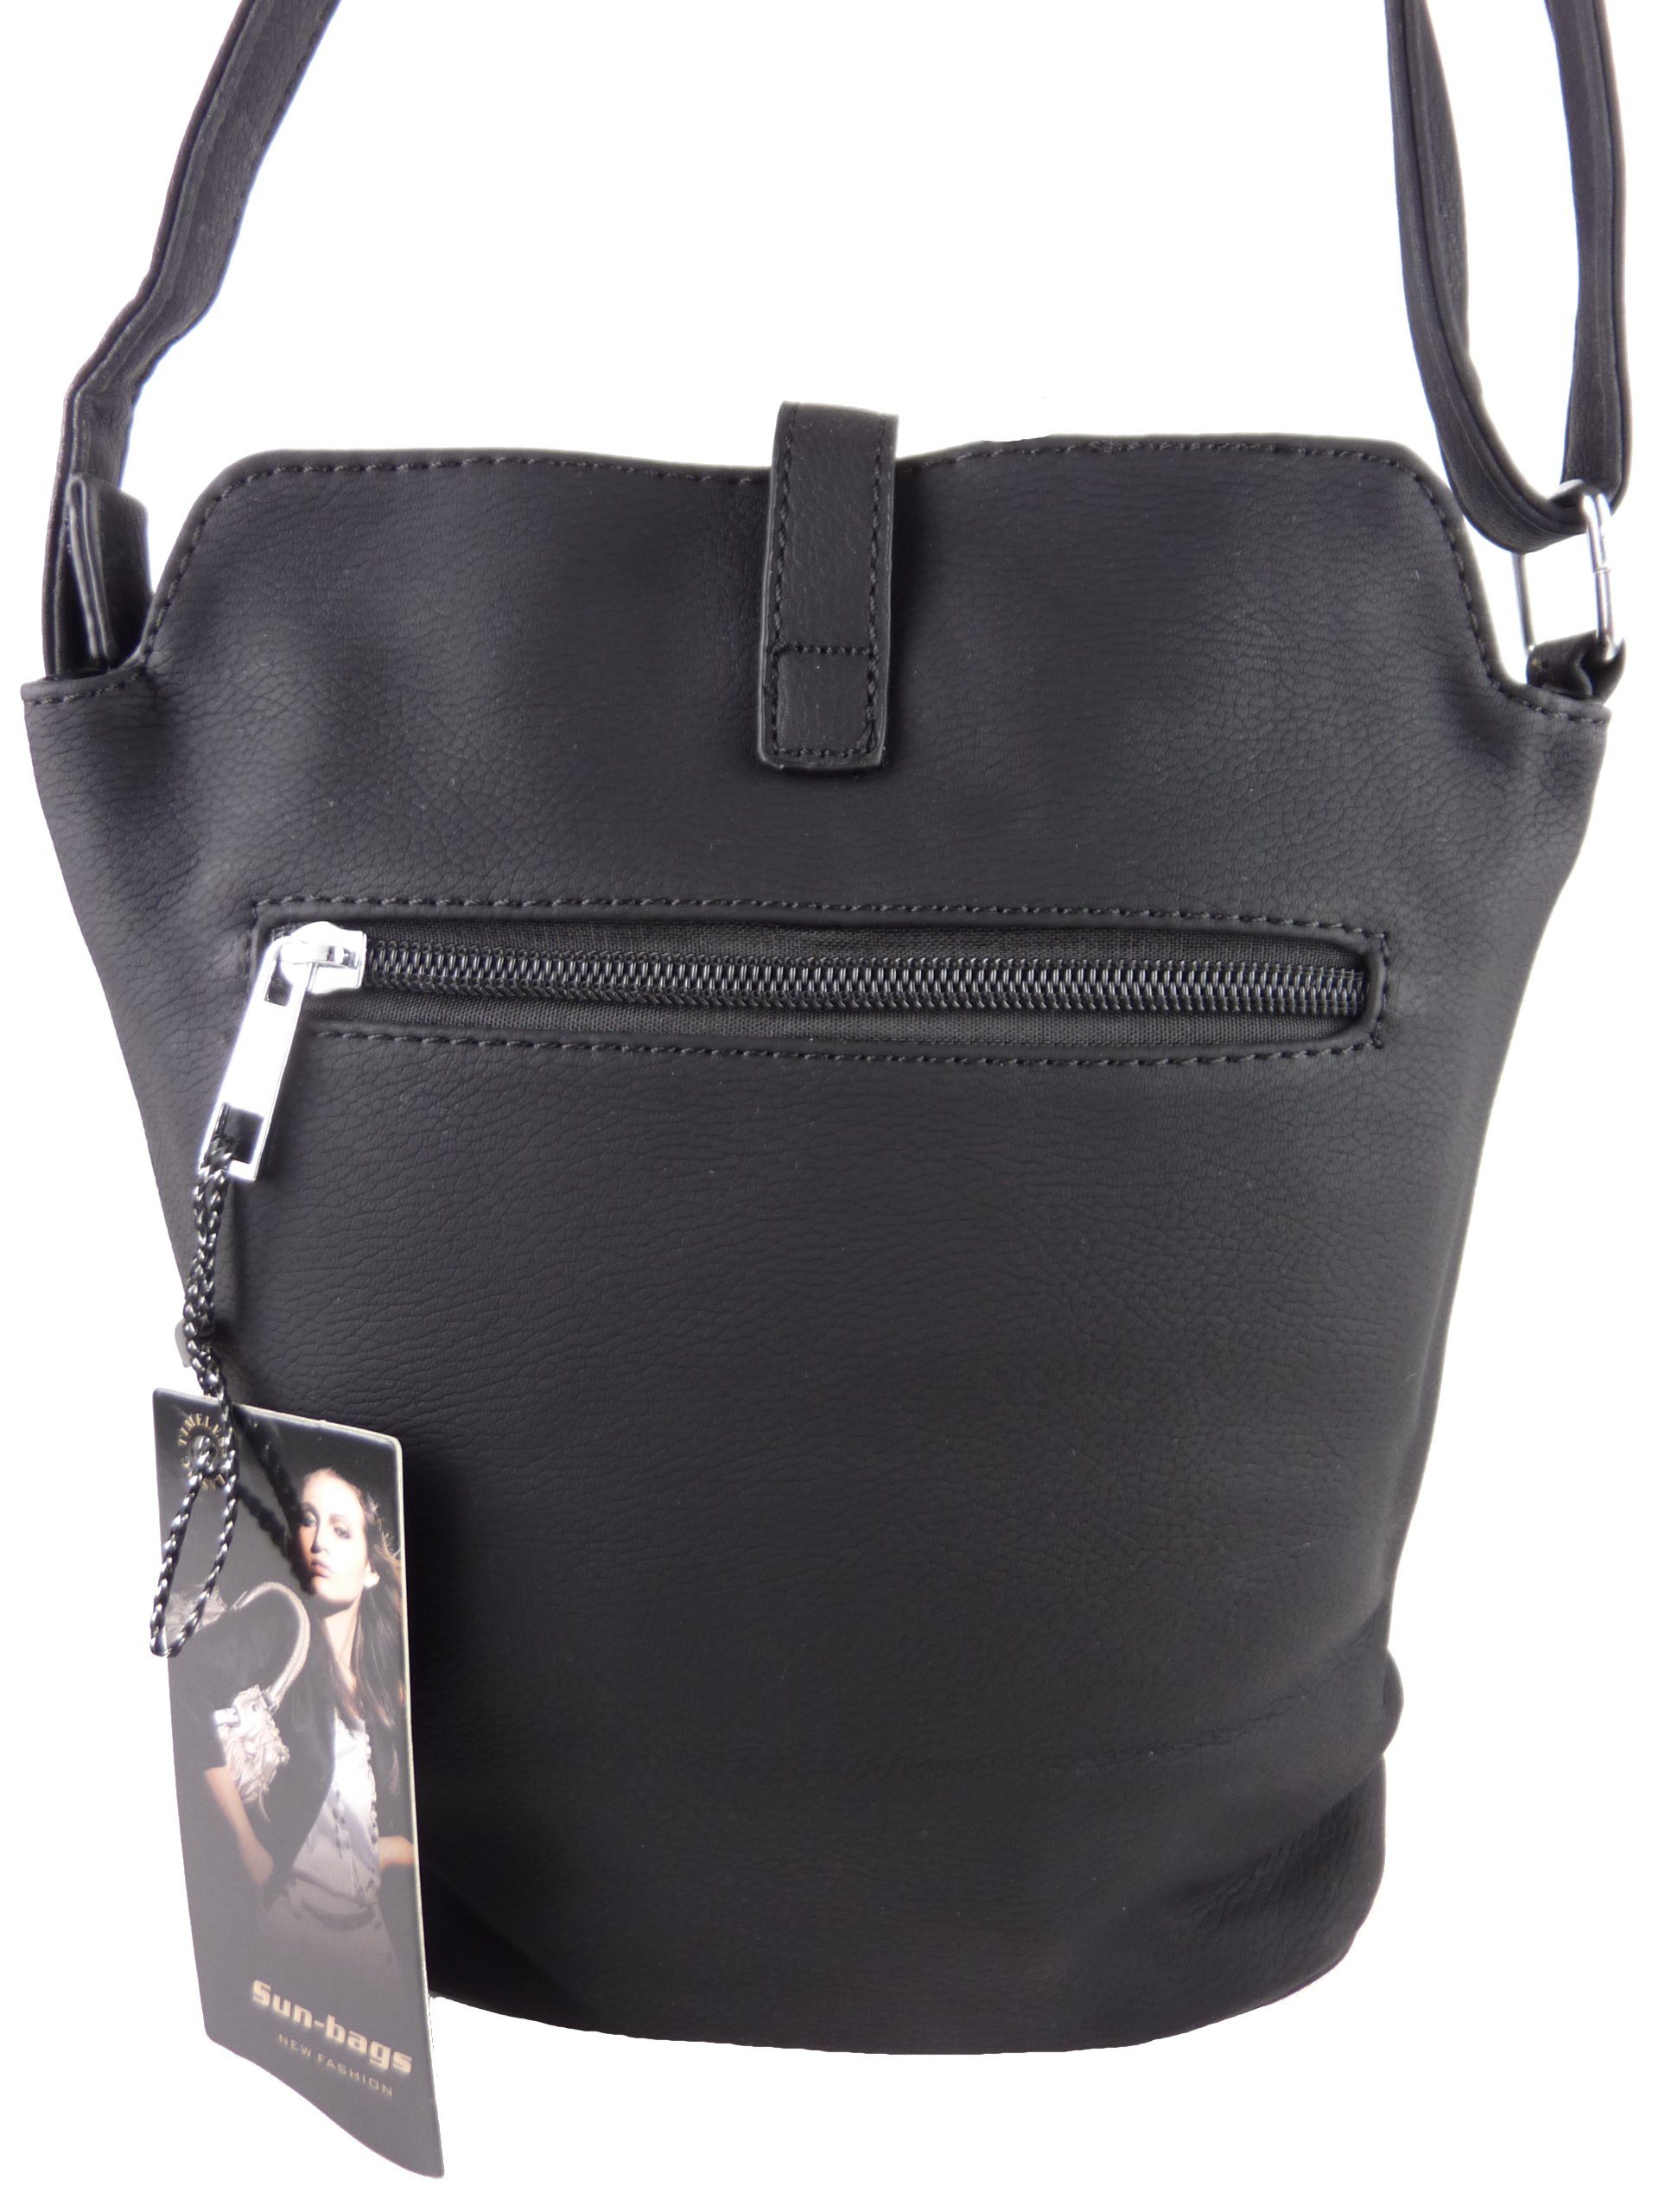 Taschen4life Umhängetasche kleine Tasche zum schwarz/weiß tragbar, umhängen Schultertasche H0447, cross als over Streifen & Muster zweifarbiges